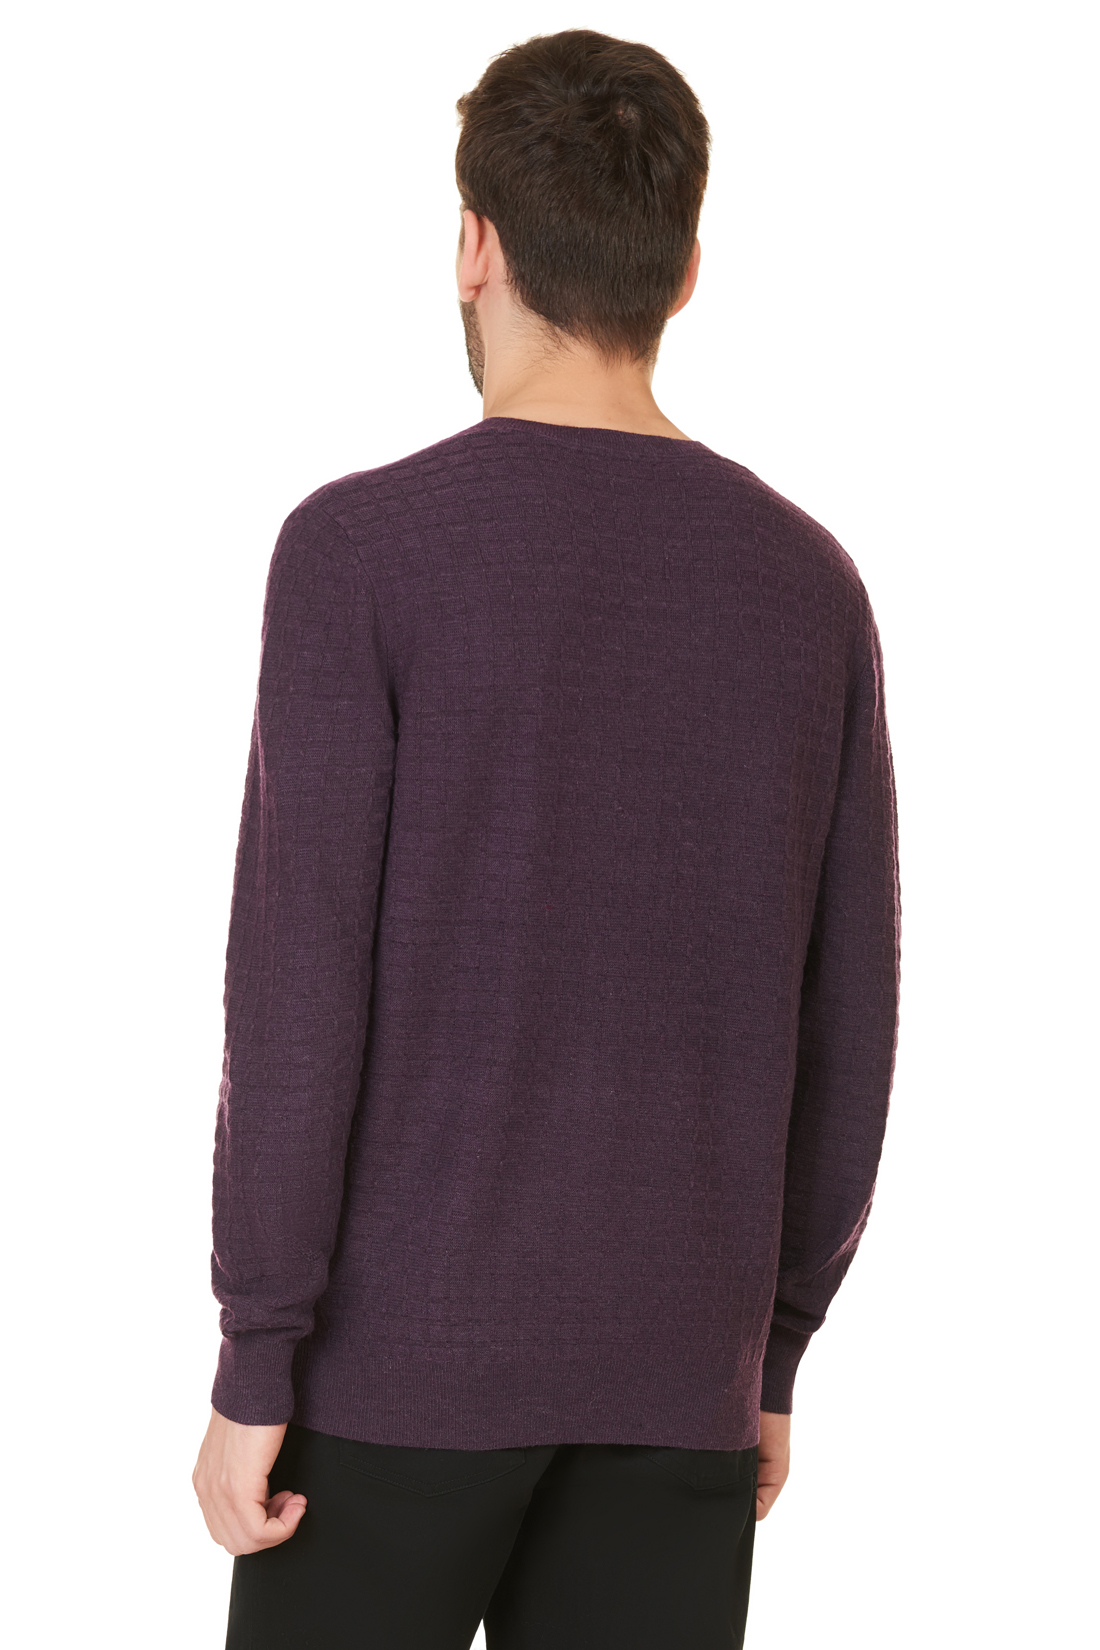 Пуловер с рельефным узором в клетку (арт. baon B637521), размер L, цвет фиолетовый Пуловер с рельефным узором в клетку (арт. baon B637521) - фото 2